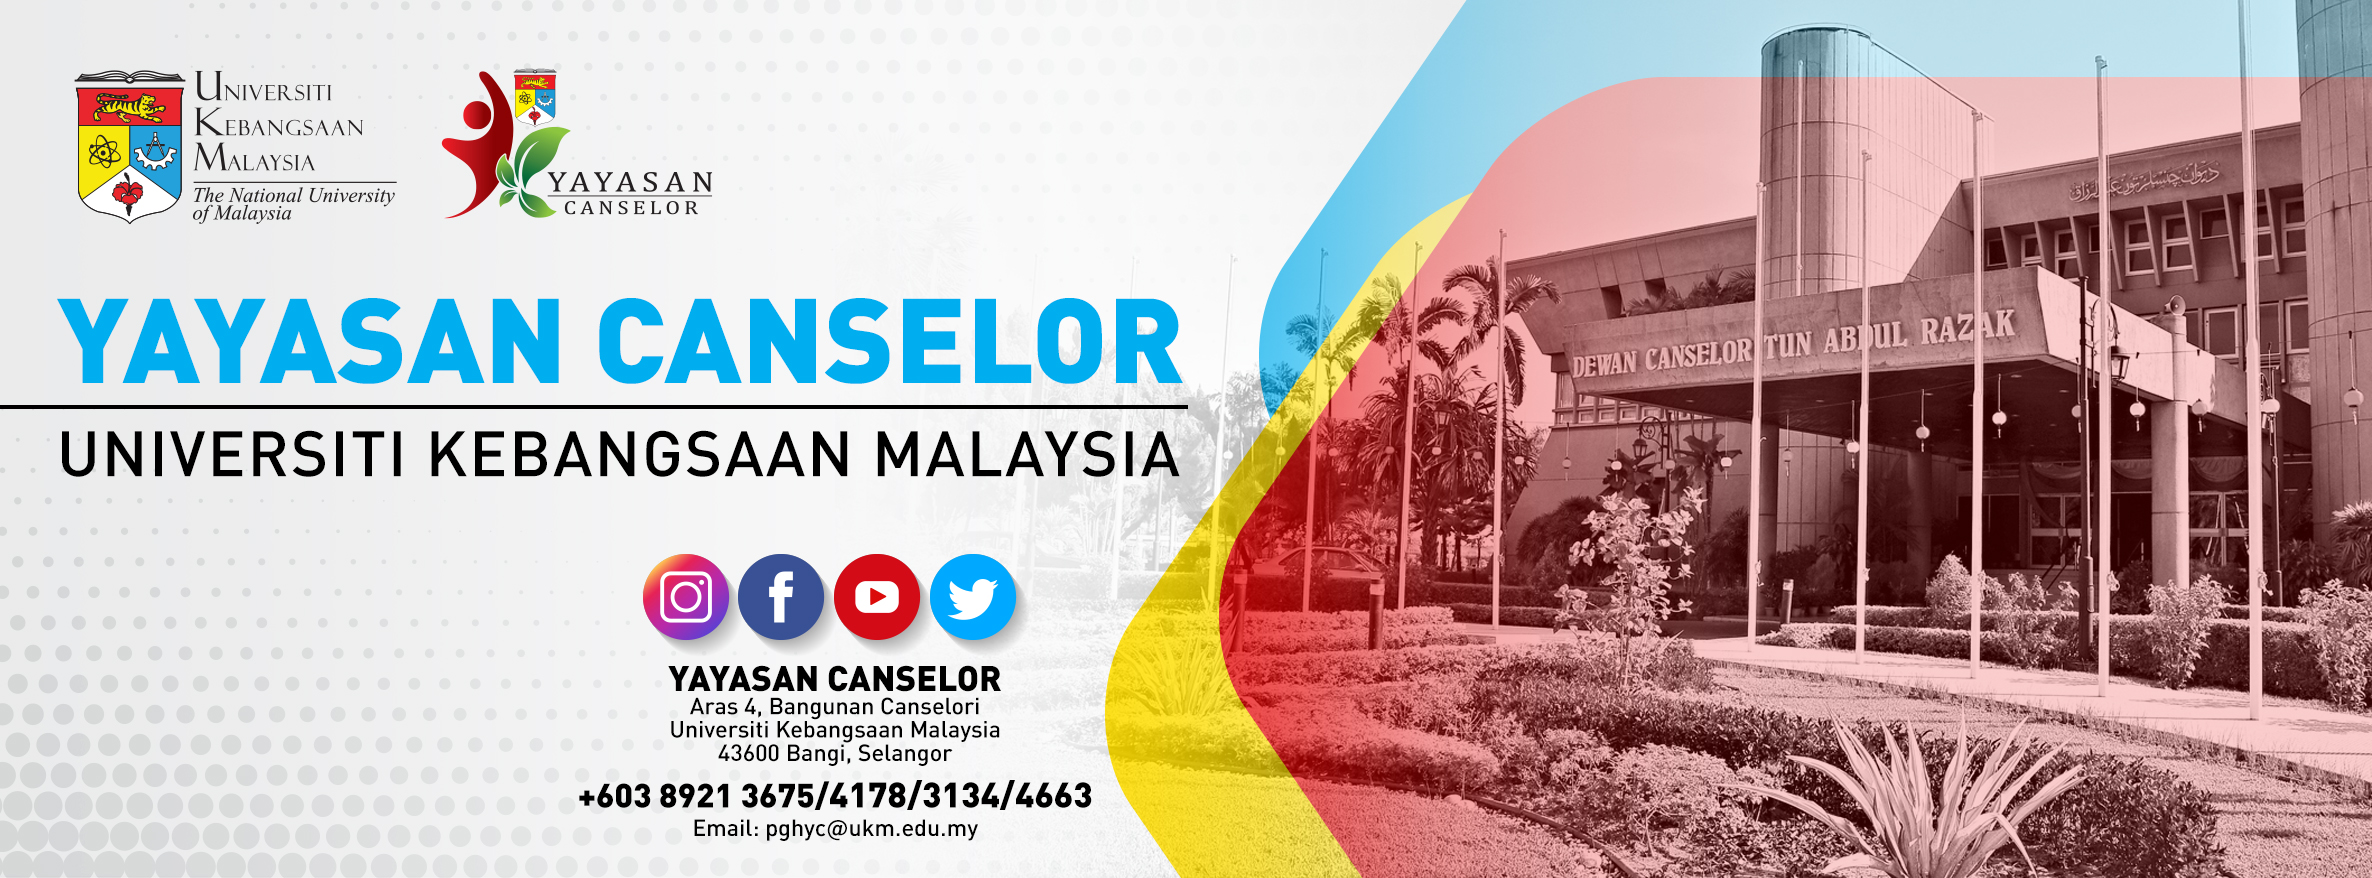 Selangor scholarship yayasan Biasiswa Gadang